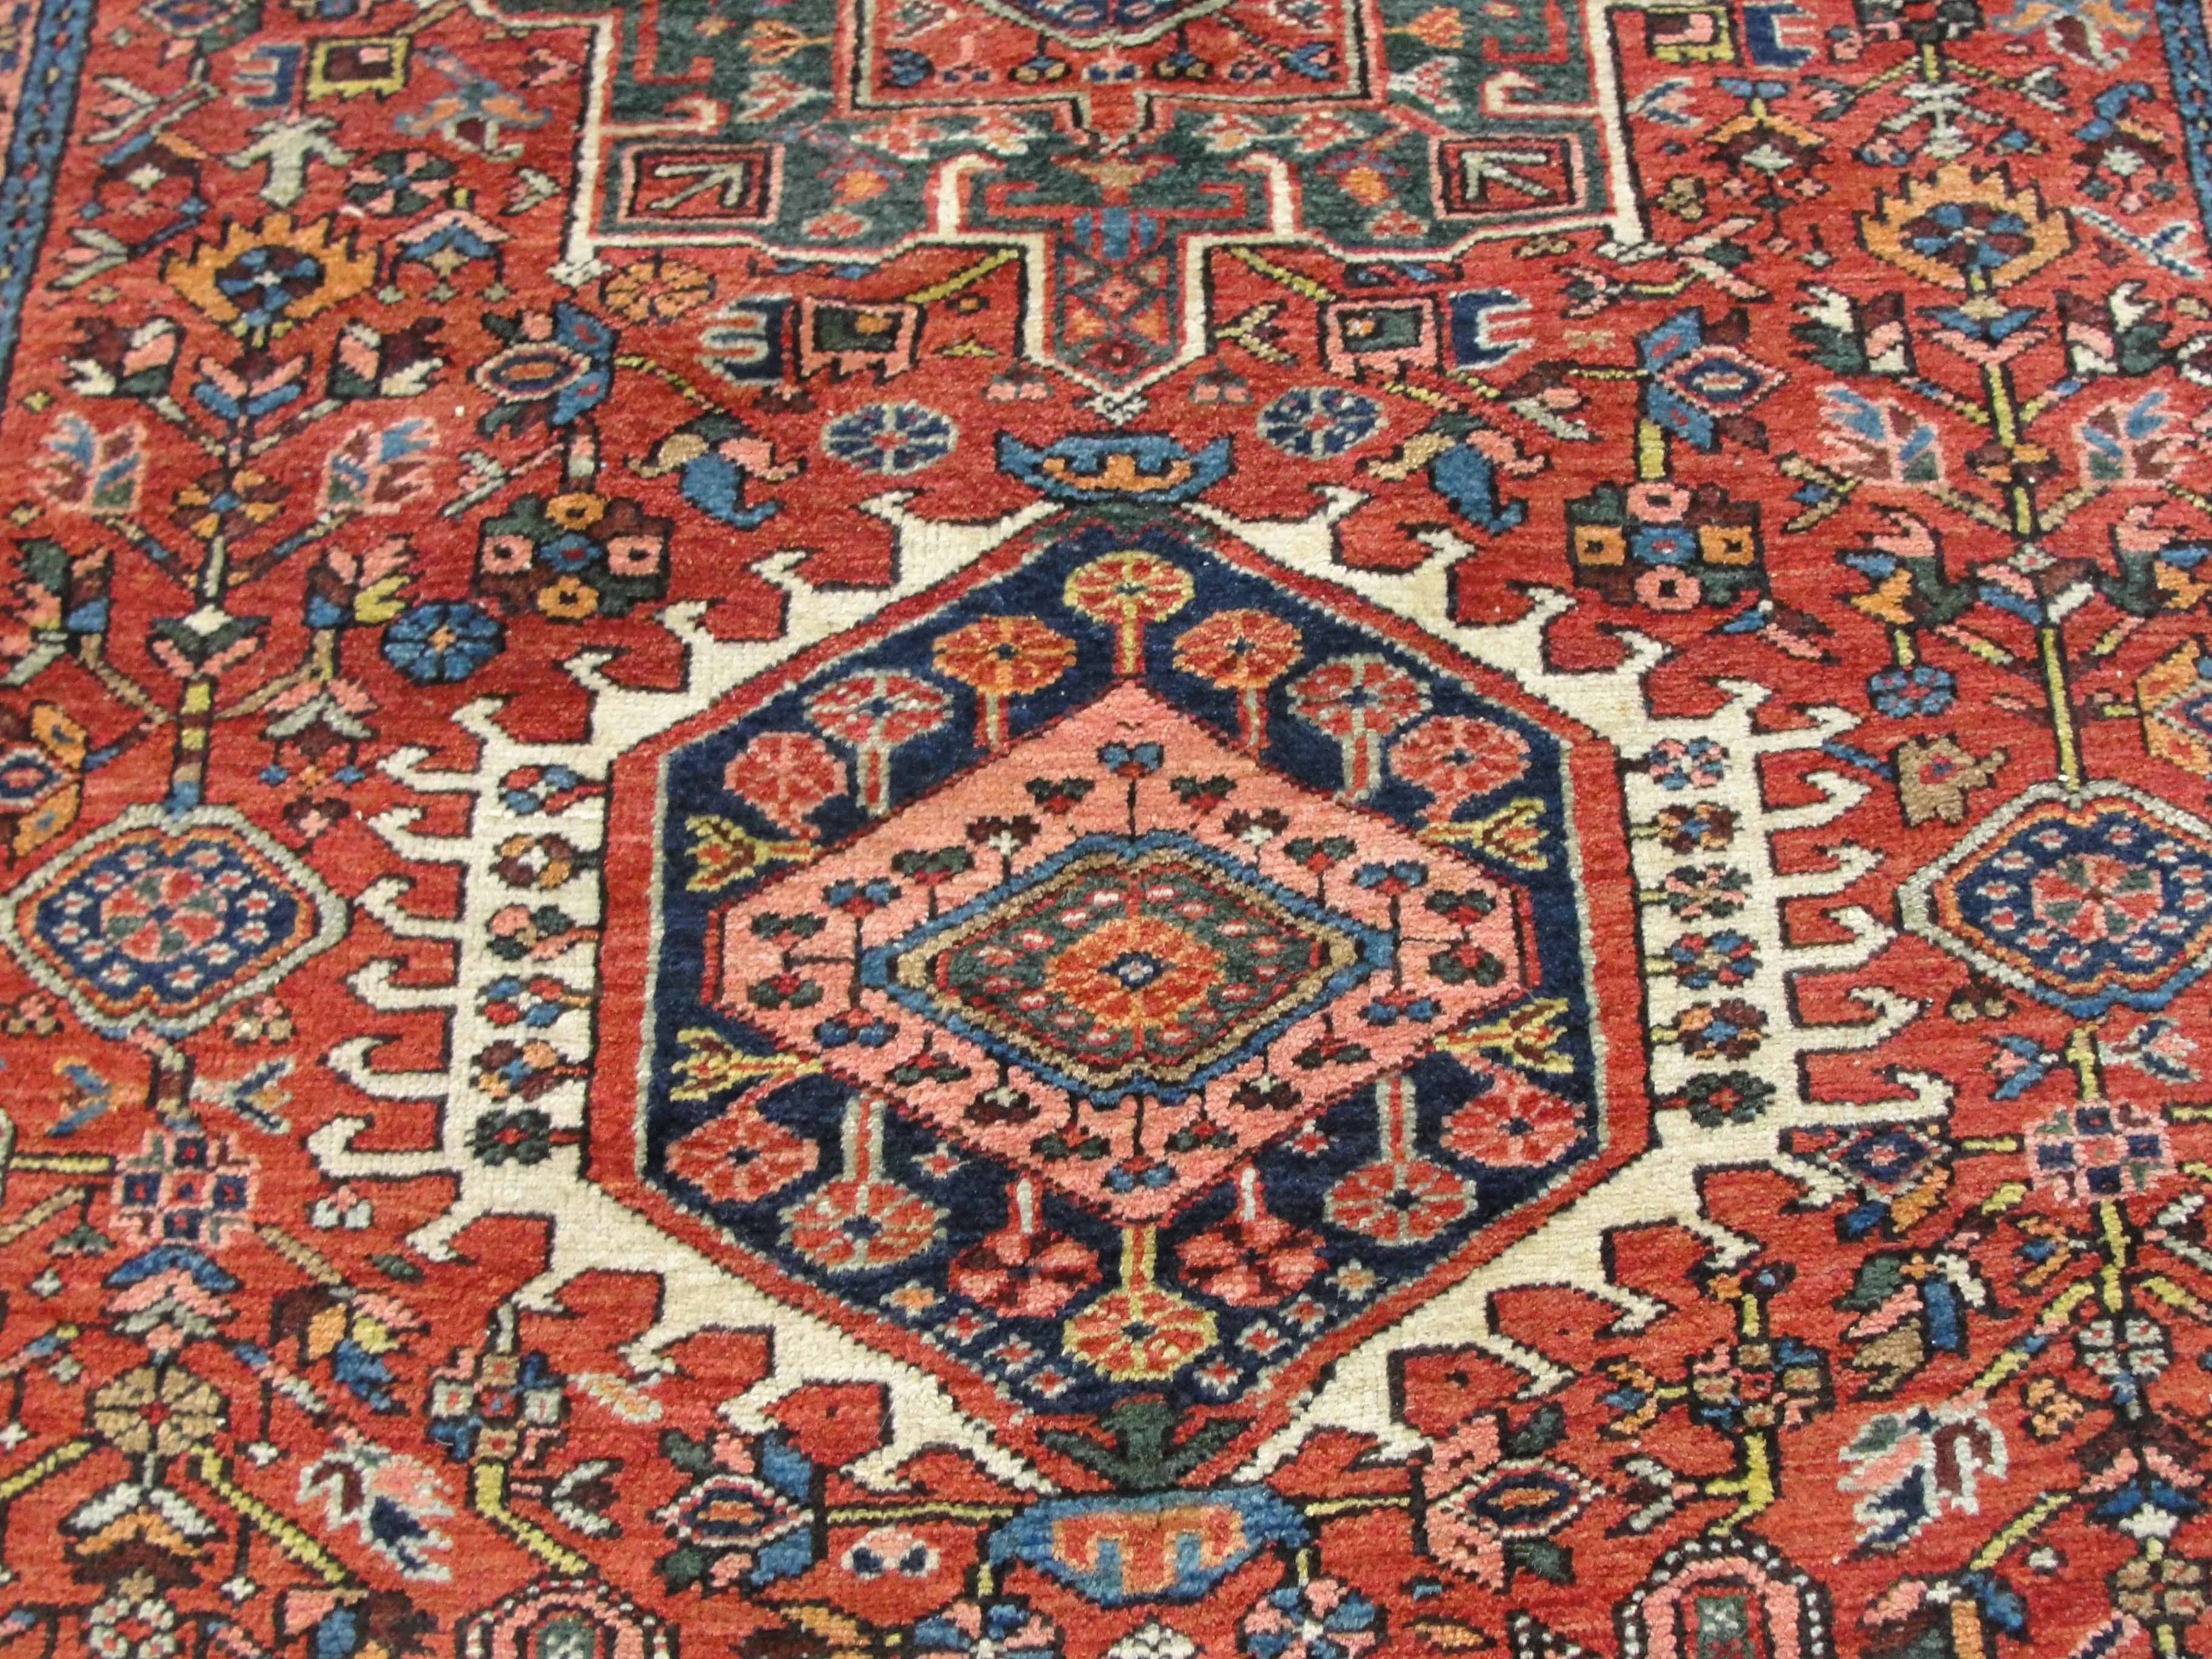 Wool Antique Persian Karajah/Heriz/Serapi Rug, 4'10